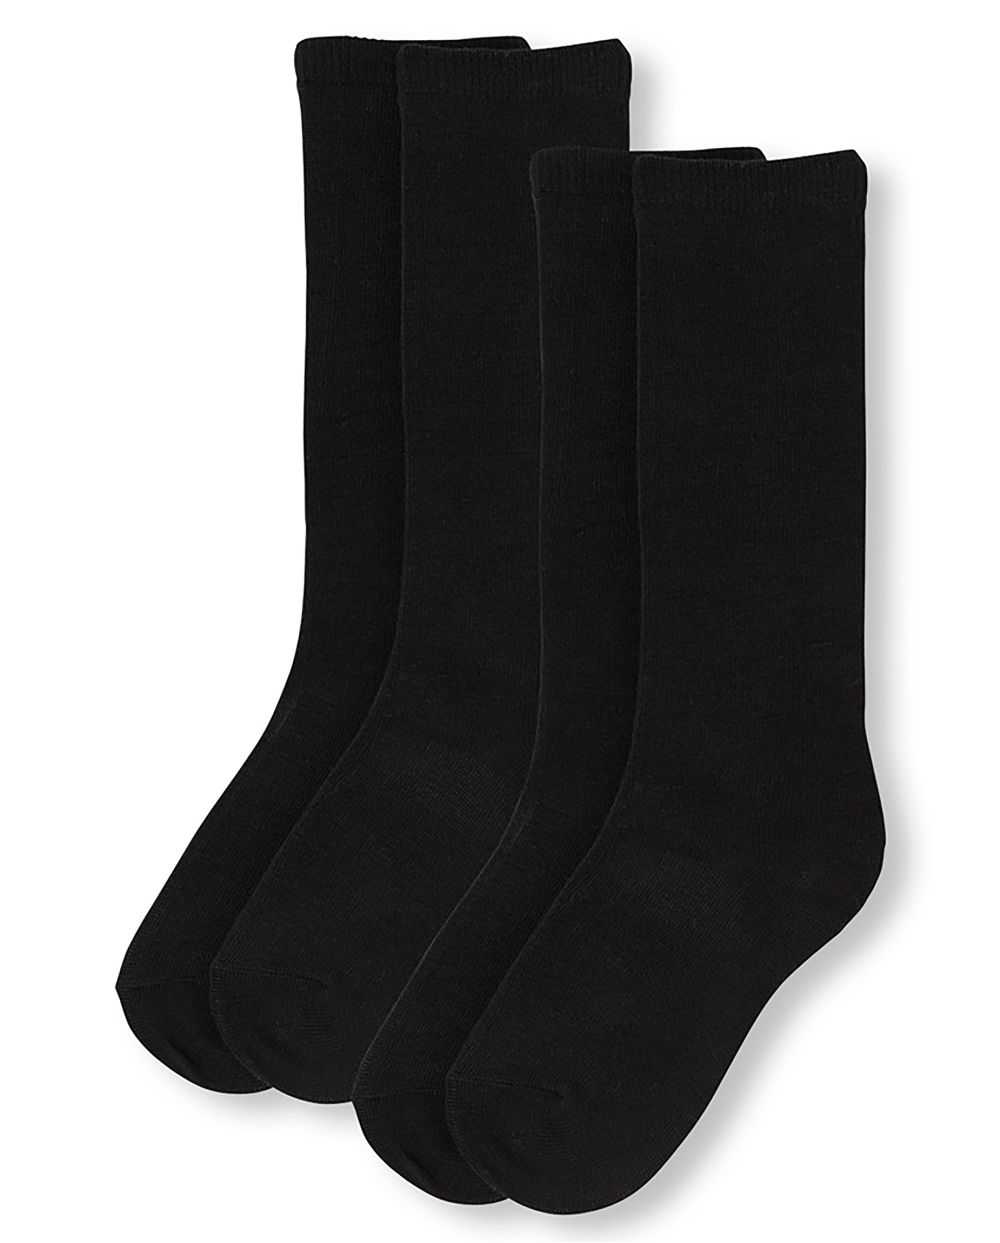 

Girls Uniform Knee Socks 2-Pack - Black - The Children's Place